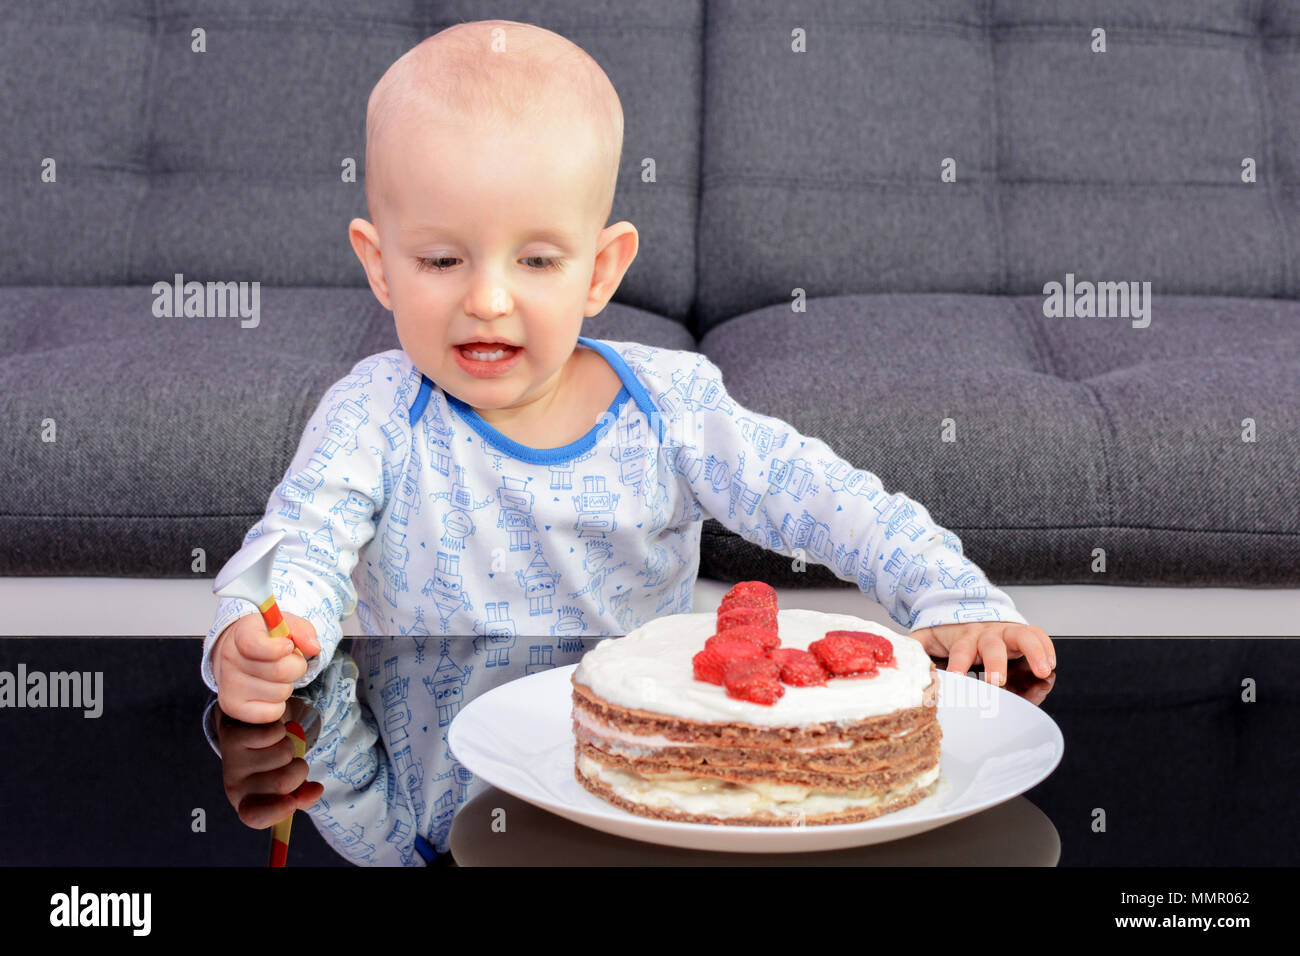 Der erste Geburtstag Feier eines kleinen Jungen. Little Boy essen Geburtstag  Kuchen mit einem Löffel, alles Gute zum Geburtstag. Kleinkind am Tisch mit  Kuchen Stockfotografie - Alamy